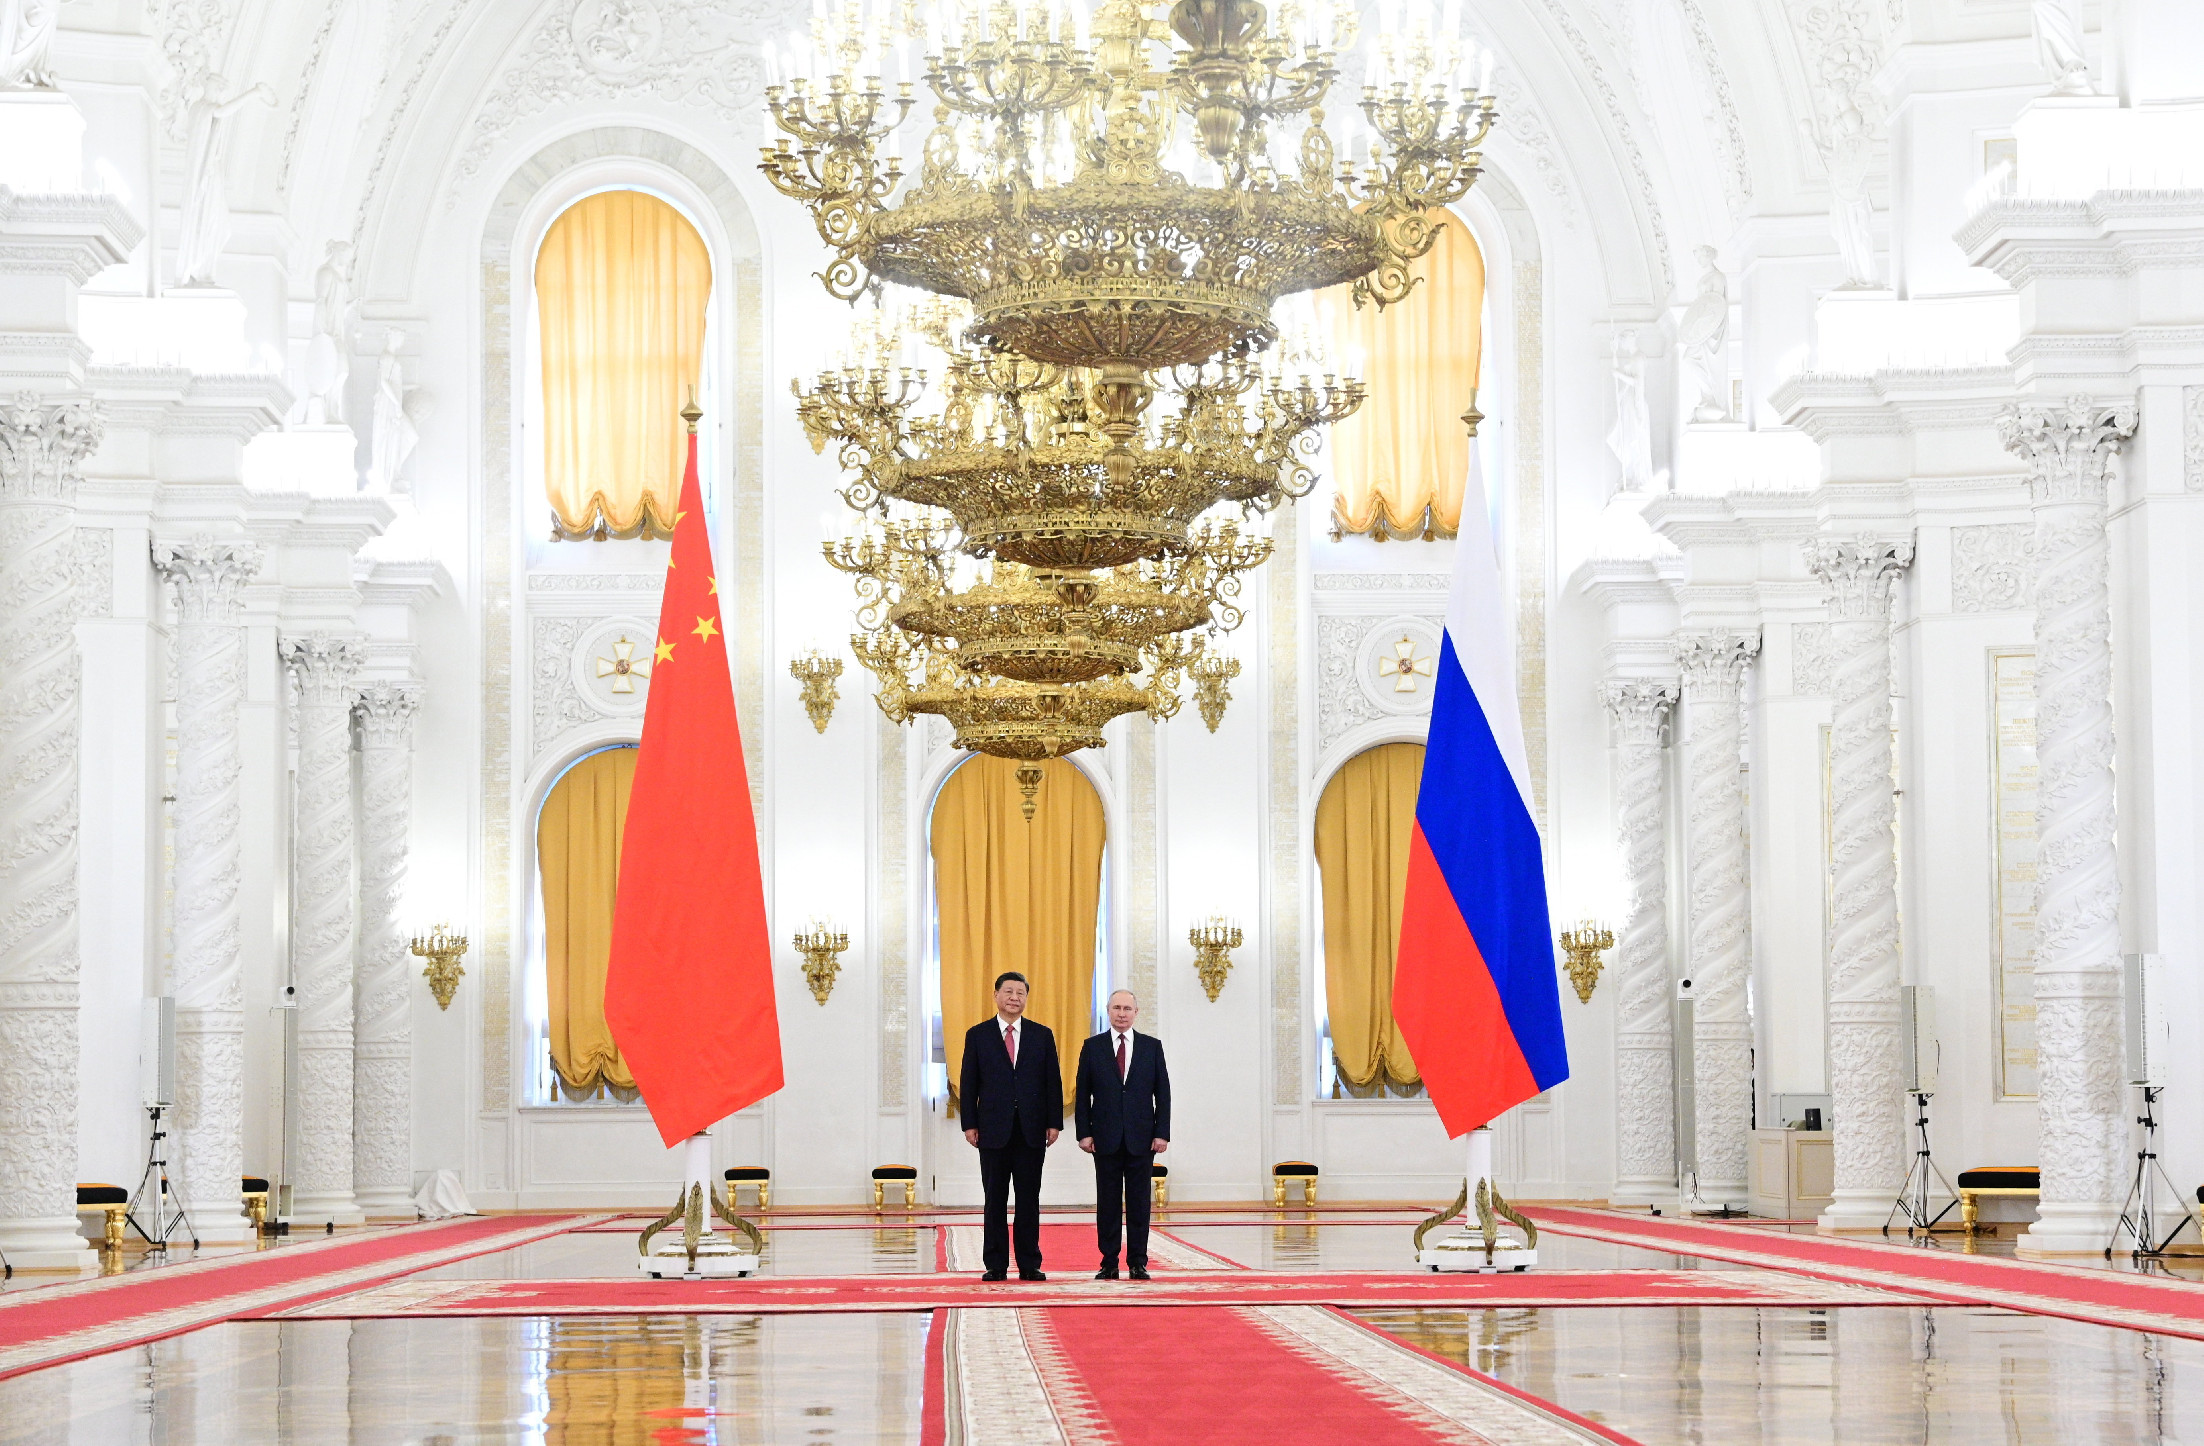 Közös nyilatkozatot adott ki Kína és Oroszország, Kína a békéről beszélt